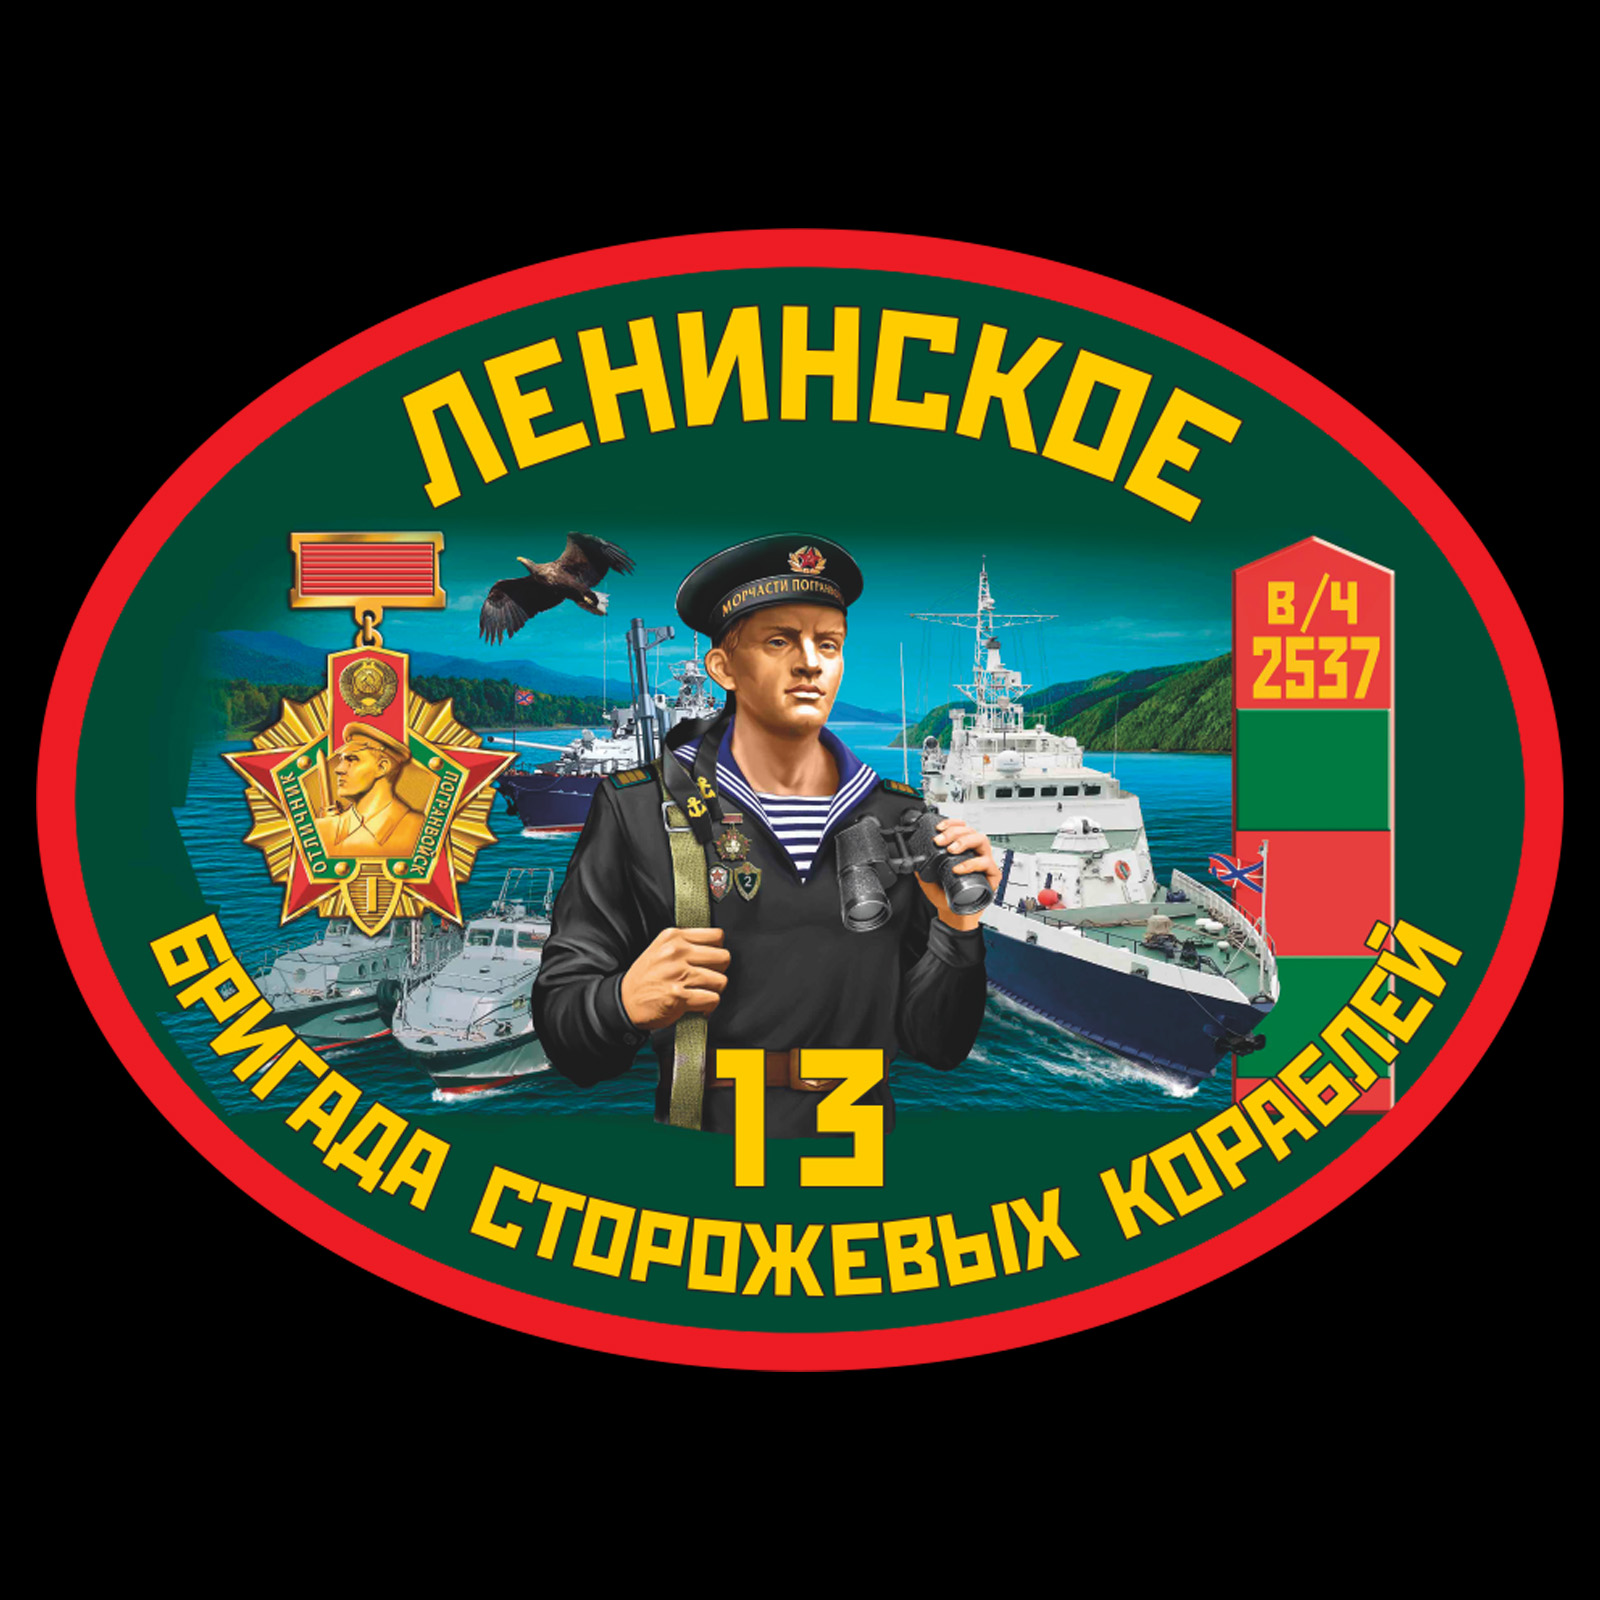 Термотрансфер 13 ОБСКР Ленинское